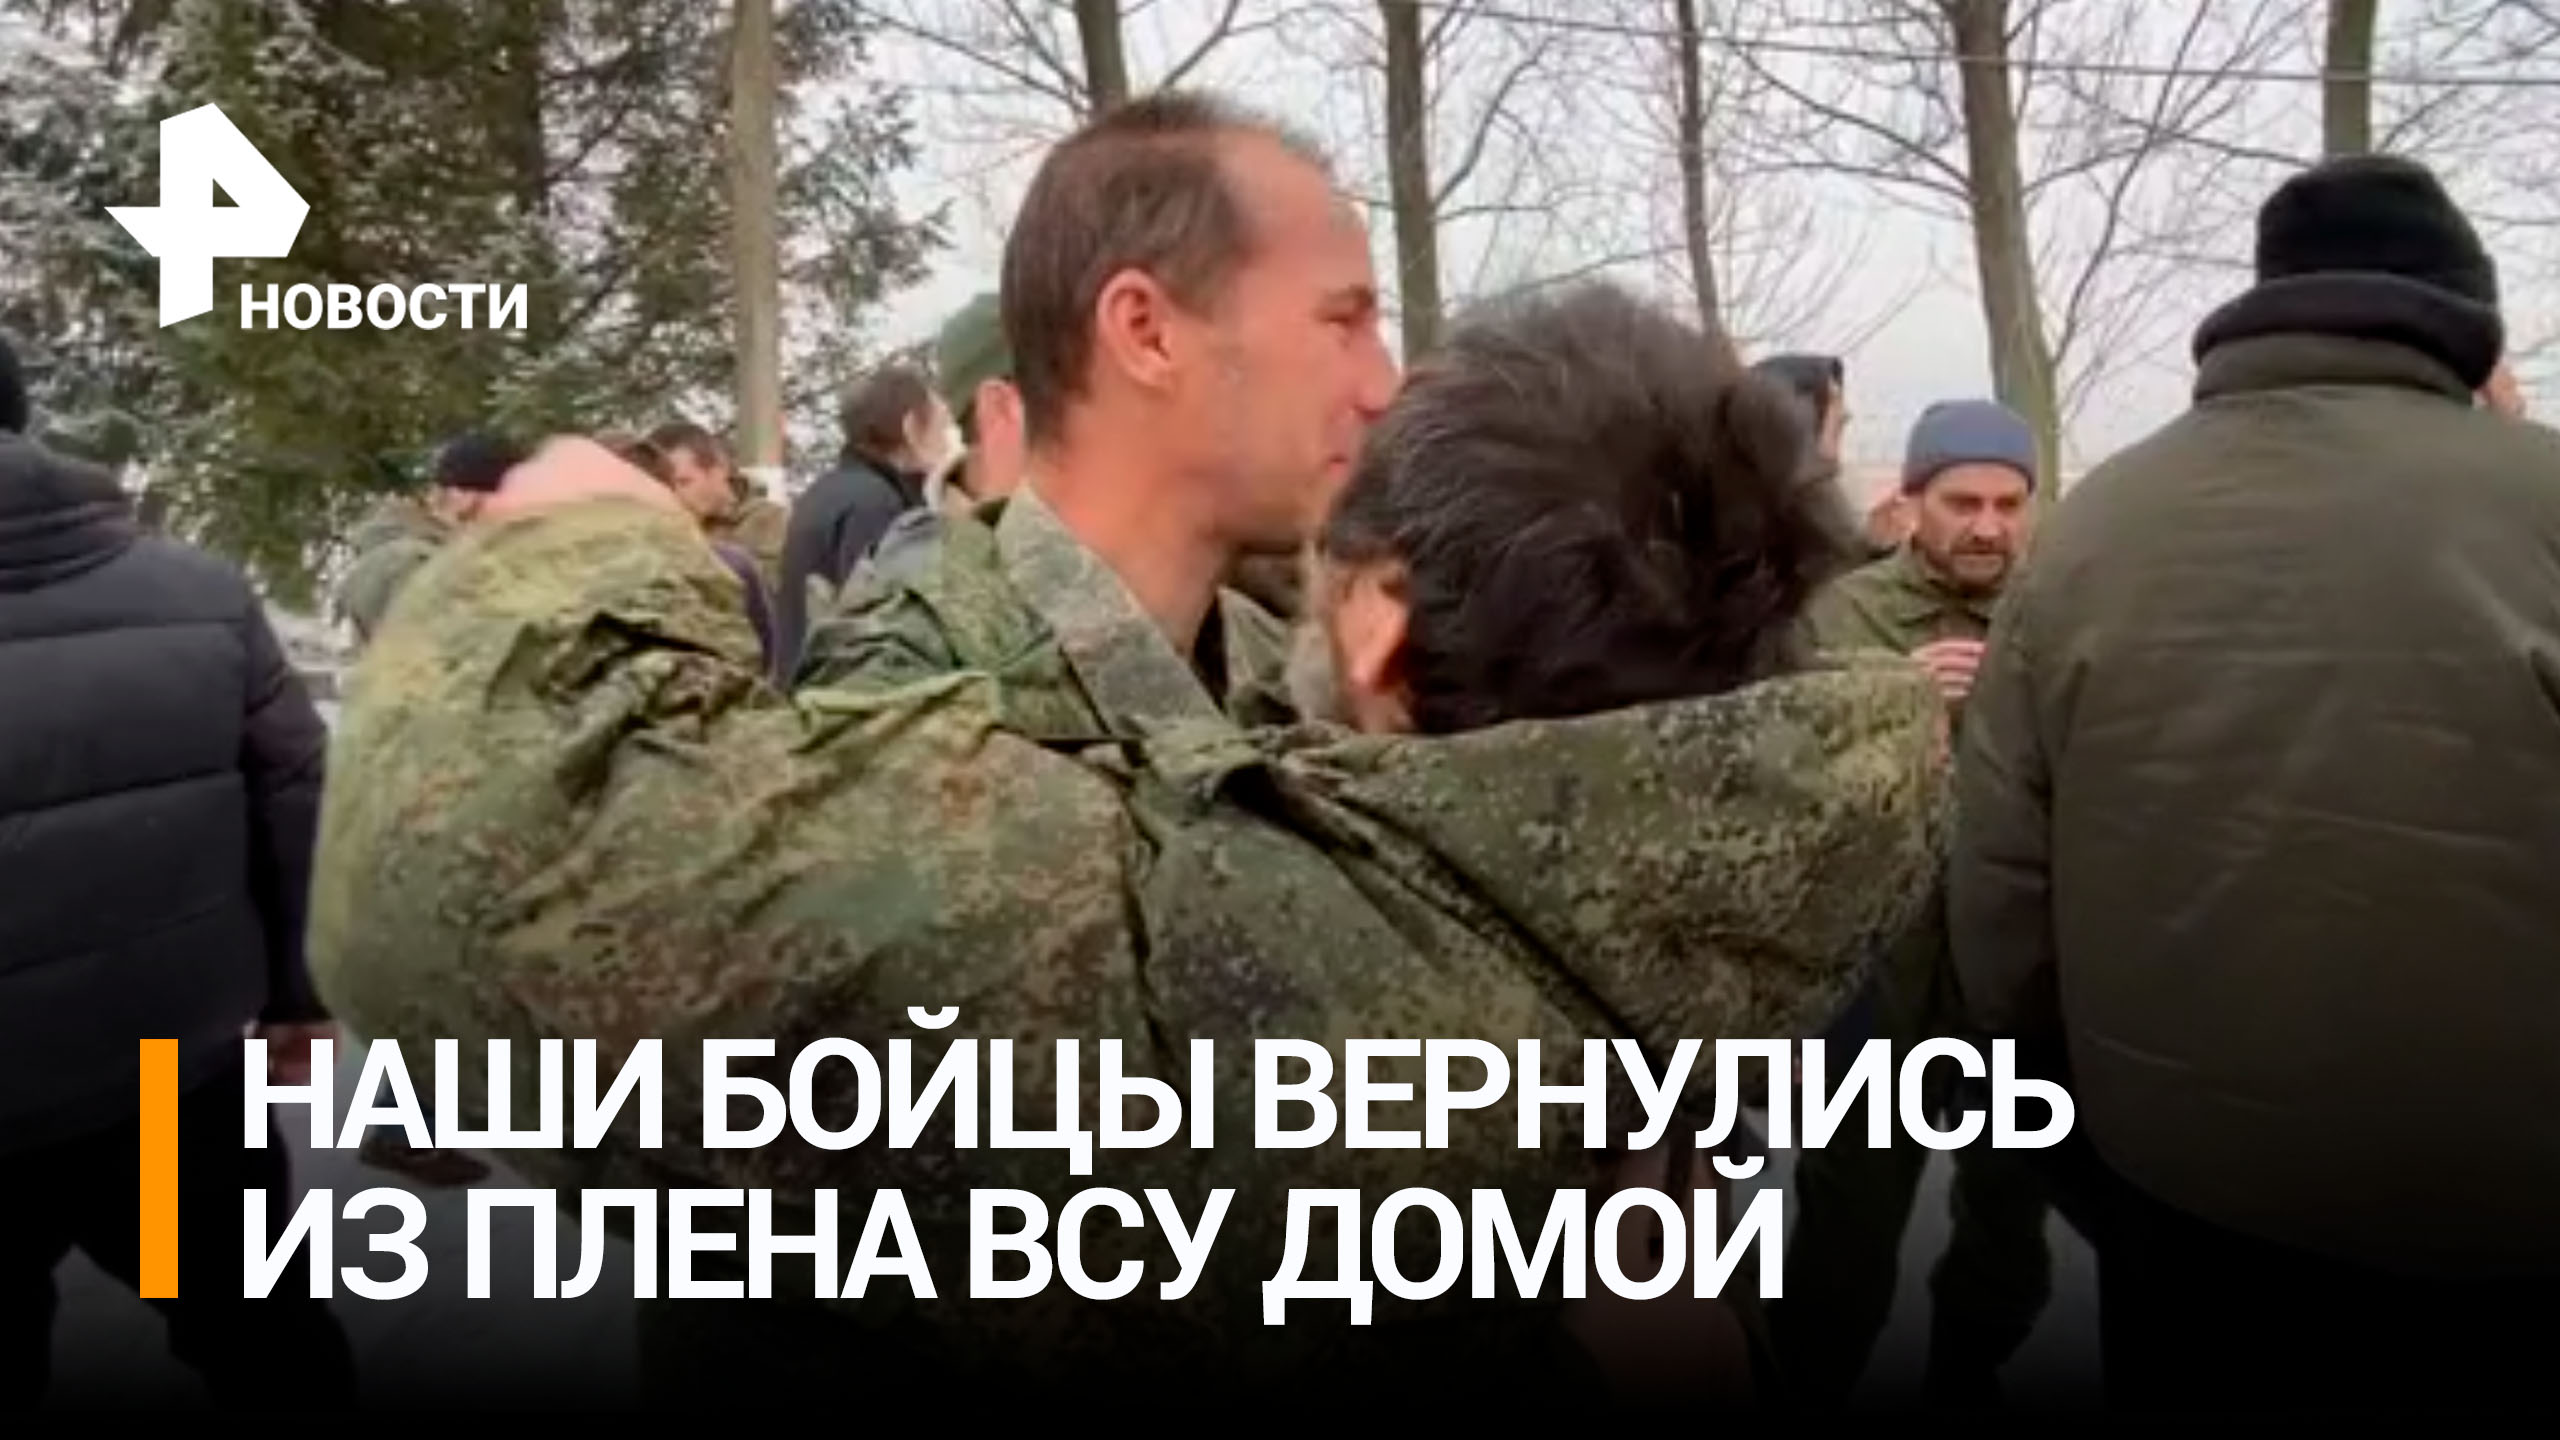 "Домой хотелось": 63 российских военнослужащих возвращены из украинского плена / РЕН Новости